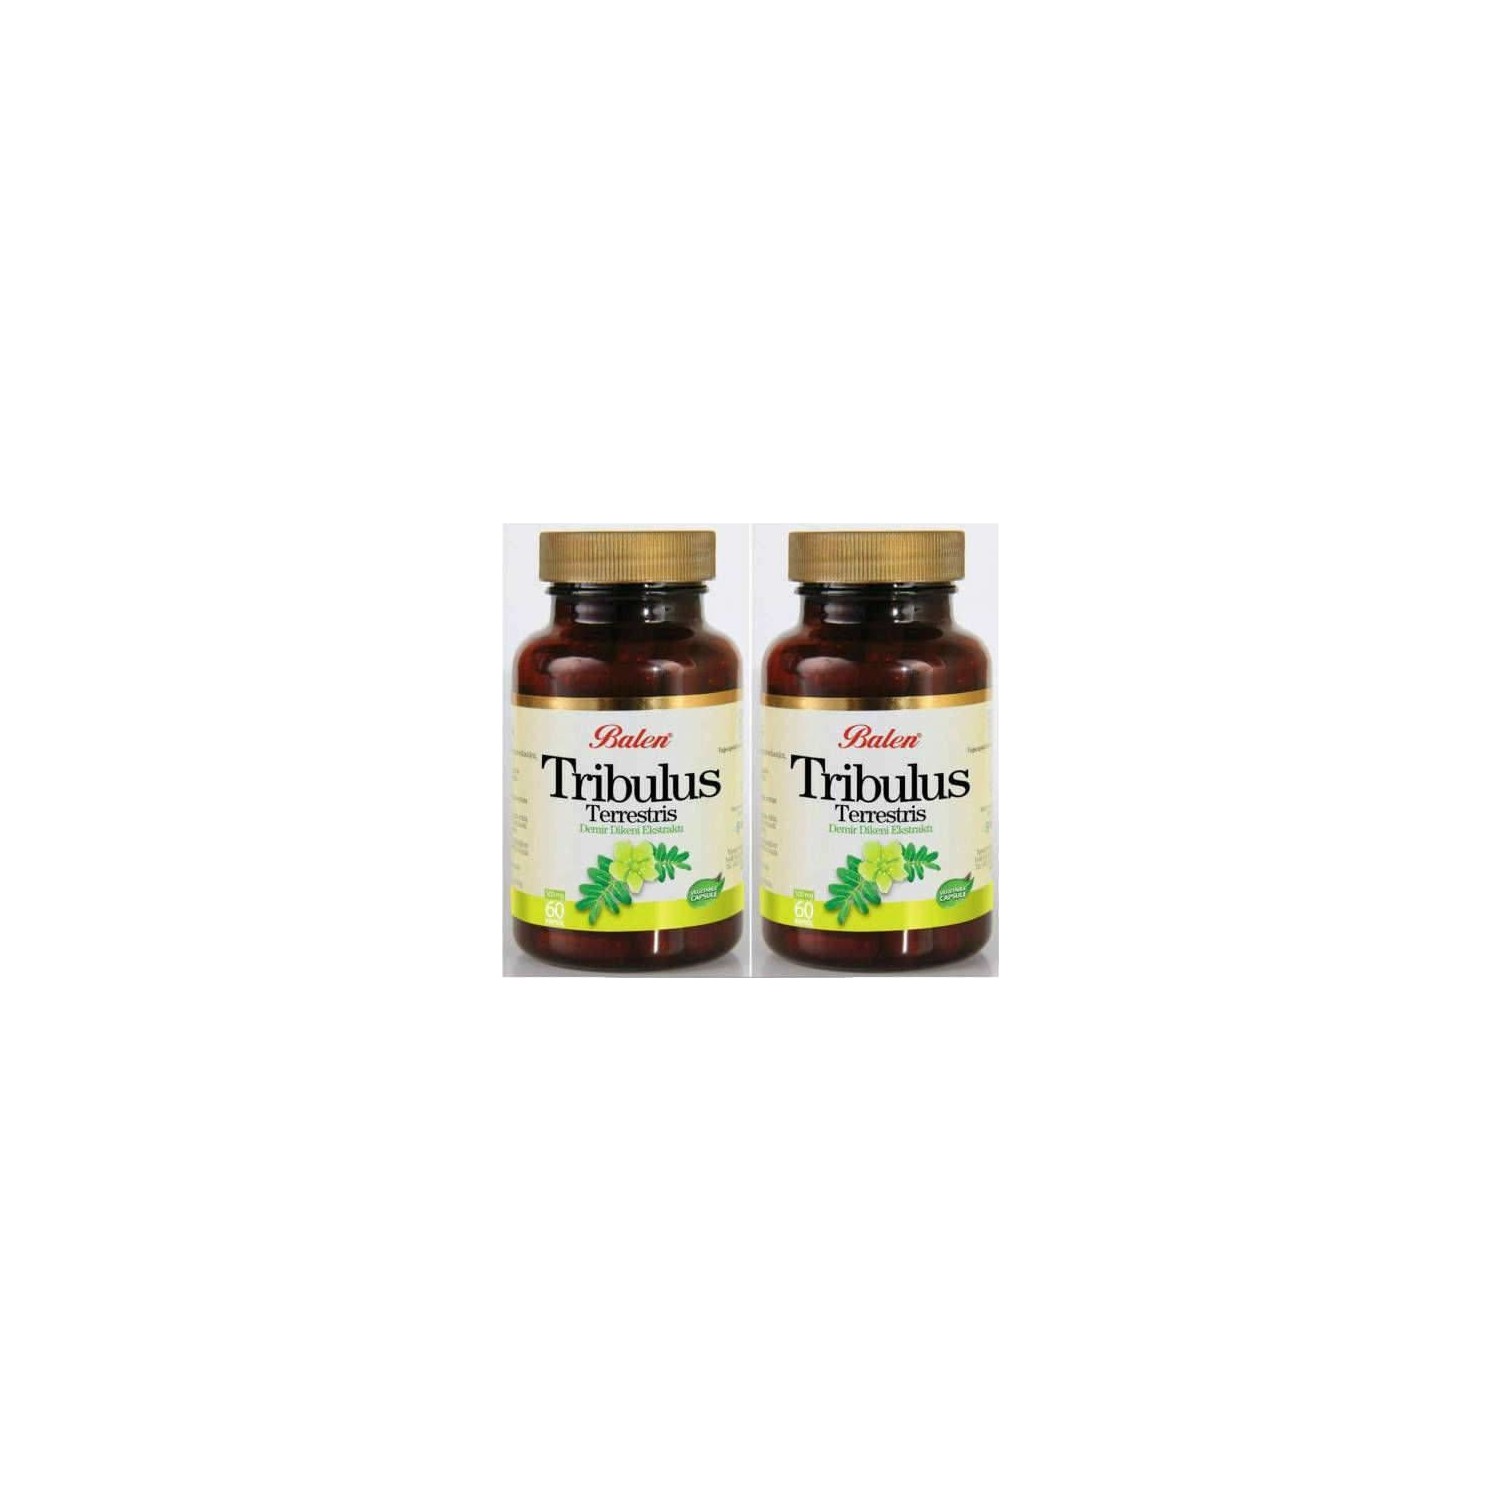 Пищевая добавка Balen Tribulus Terrestris 500 мг, 2 упаковки по 60 капсул